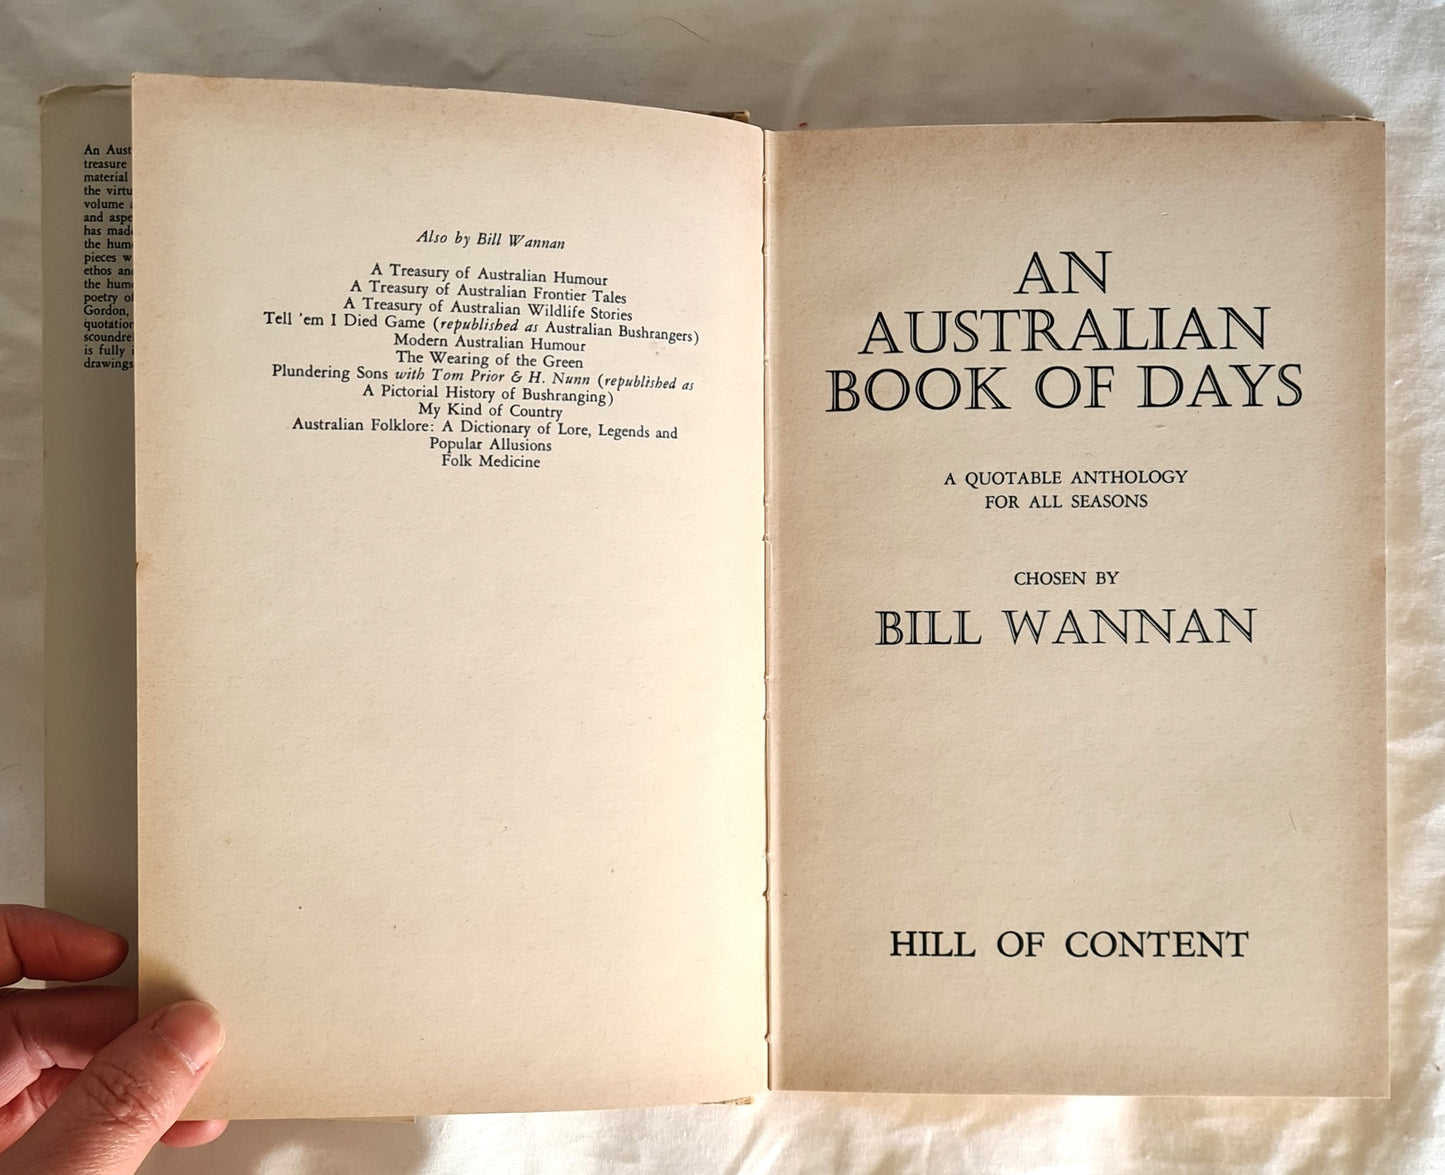 An Australian Book of Days by Bill Wannan